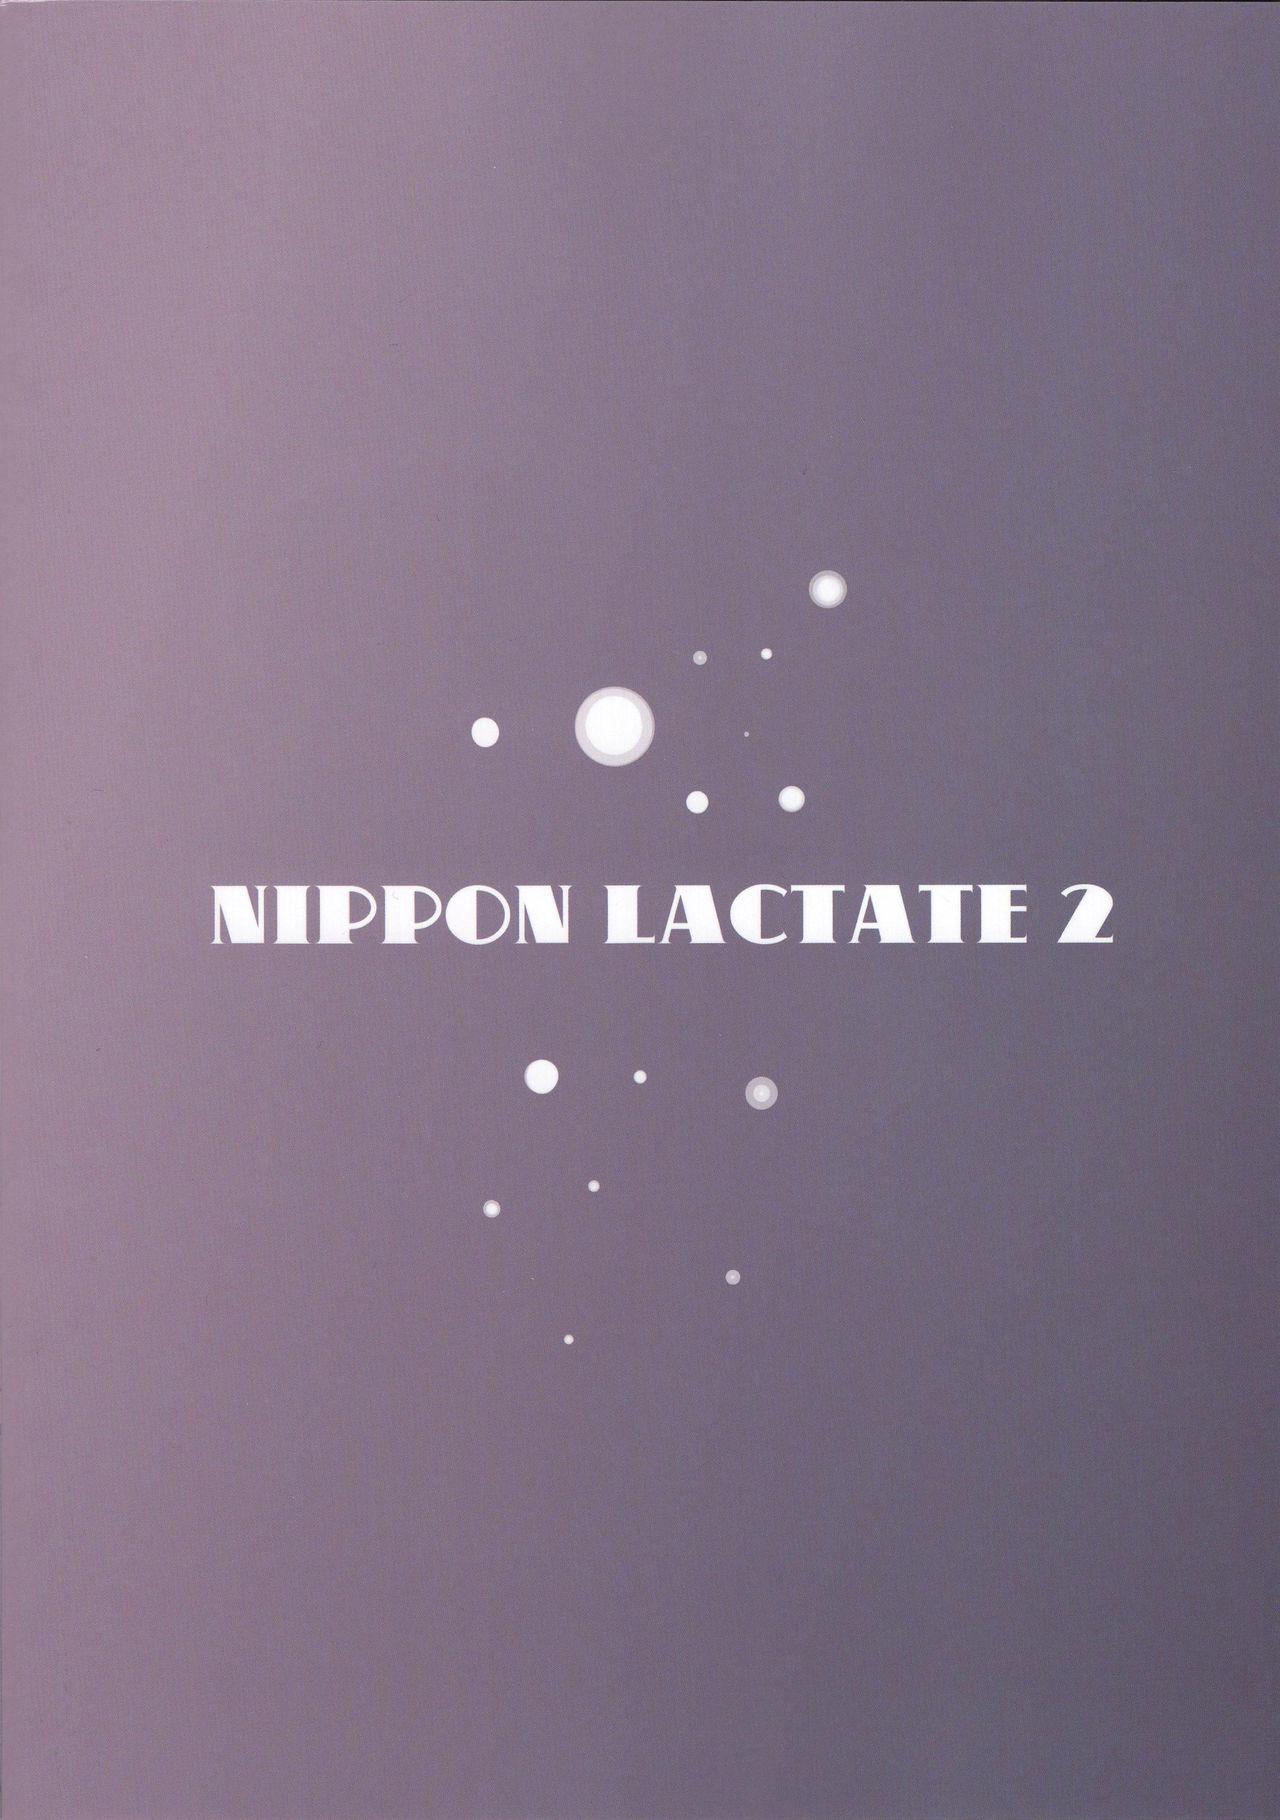 NIPPON LACTATE II 25